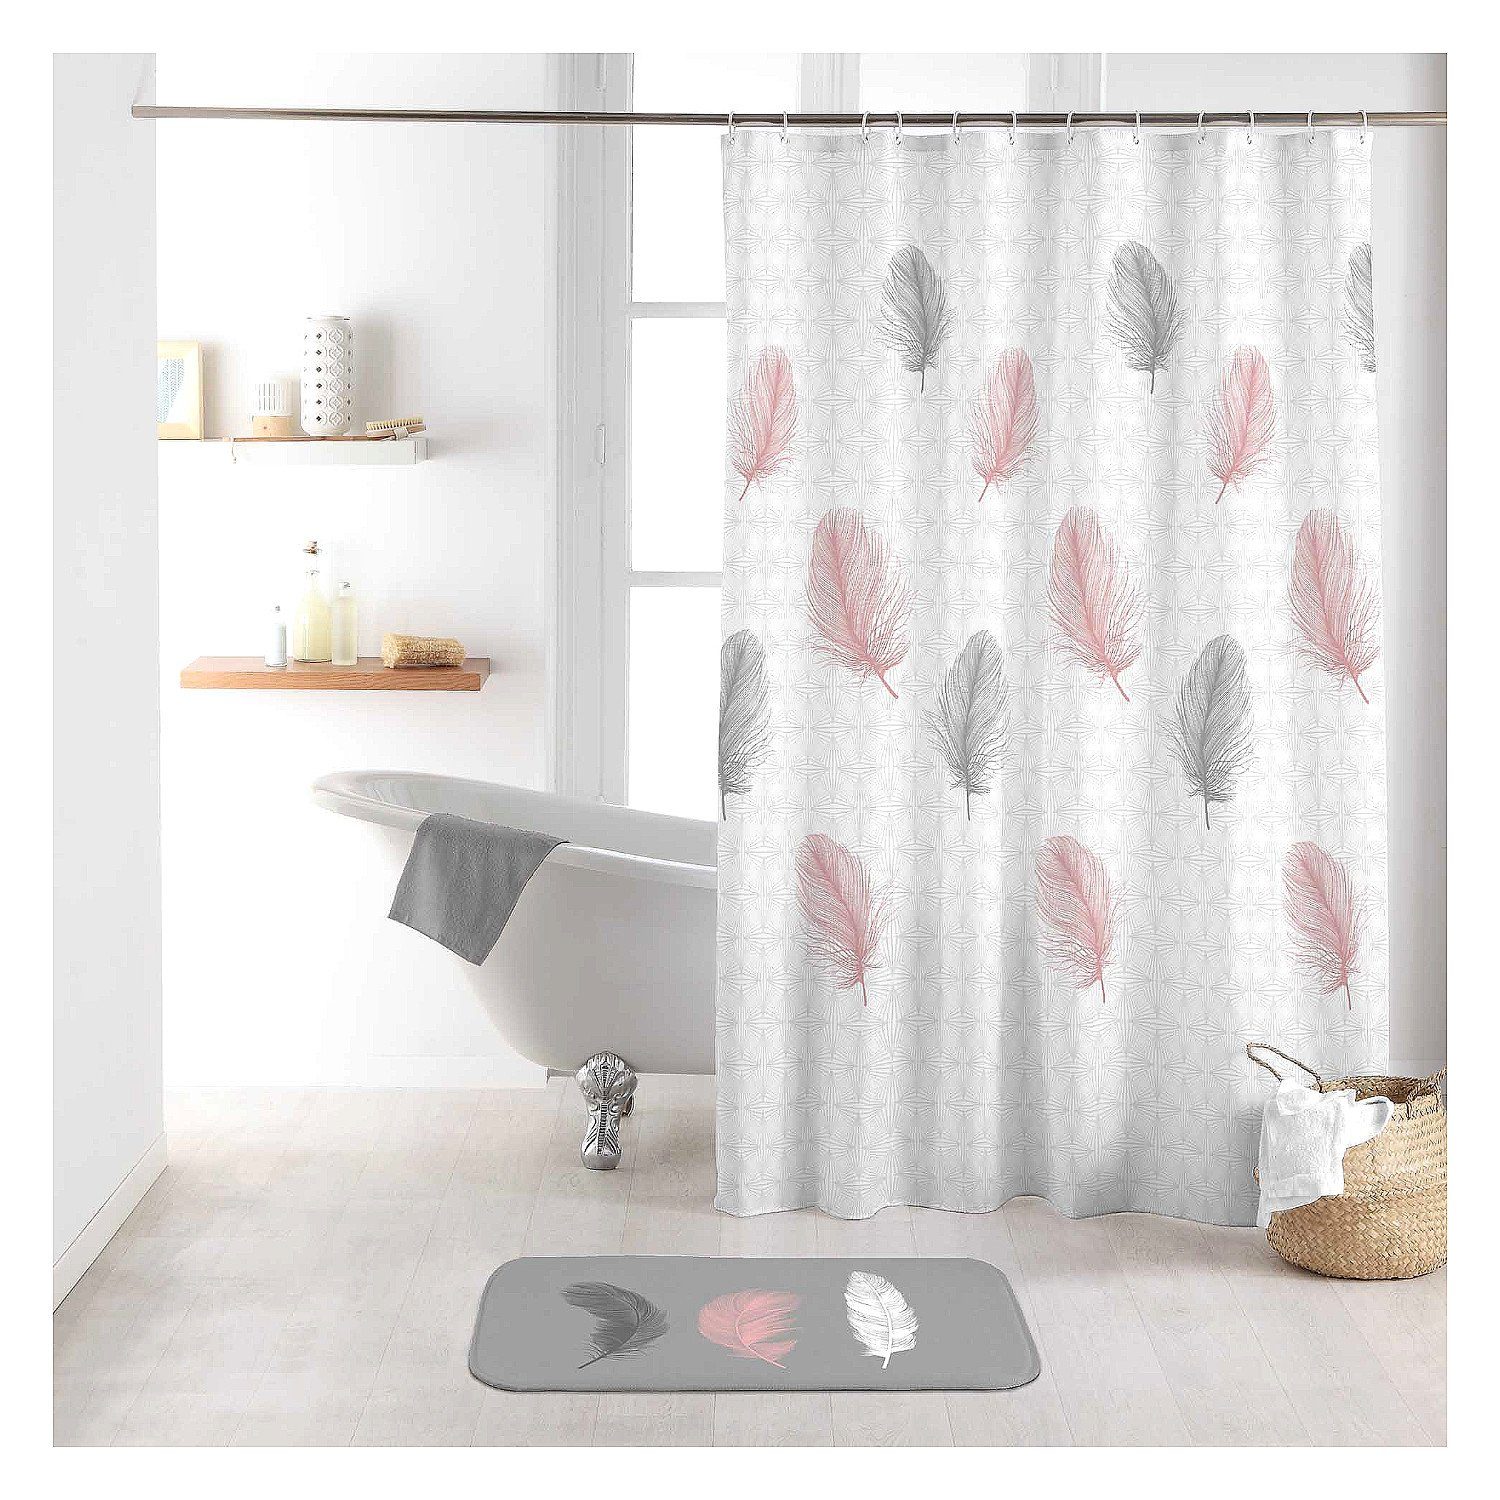 Sanixa Duschvorhang Duschvorhang Textil 180x200 cm Federn weiß rosa grau wasserabweisend Breite 180 cm, waschbar Badewannenvorhang Vorhang mit Ringen Metallösen